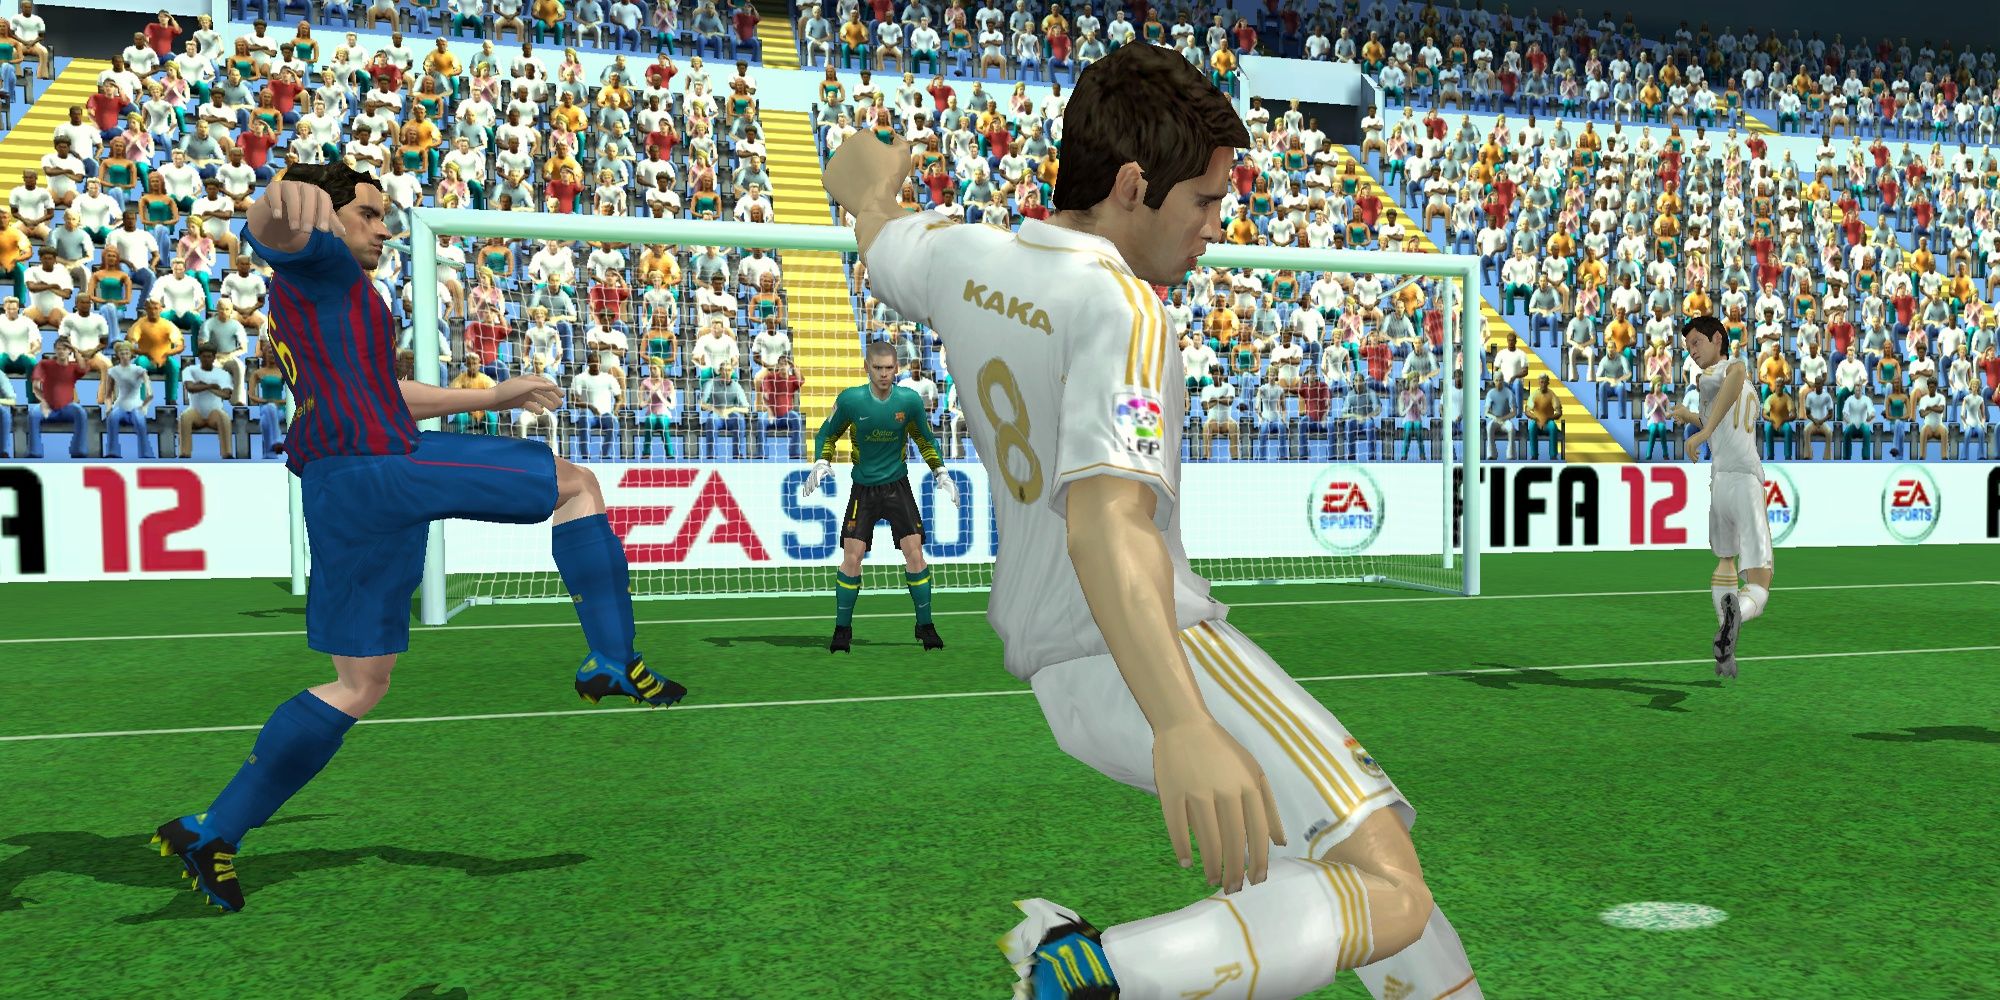 Un jugador intenta marcar contra un defensa en FIFA 12 